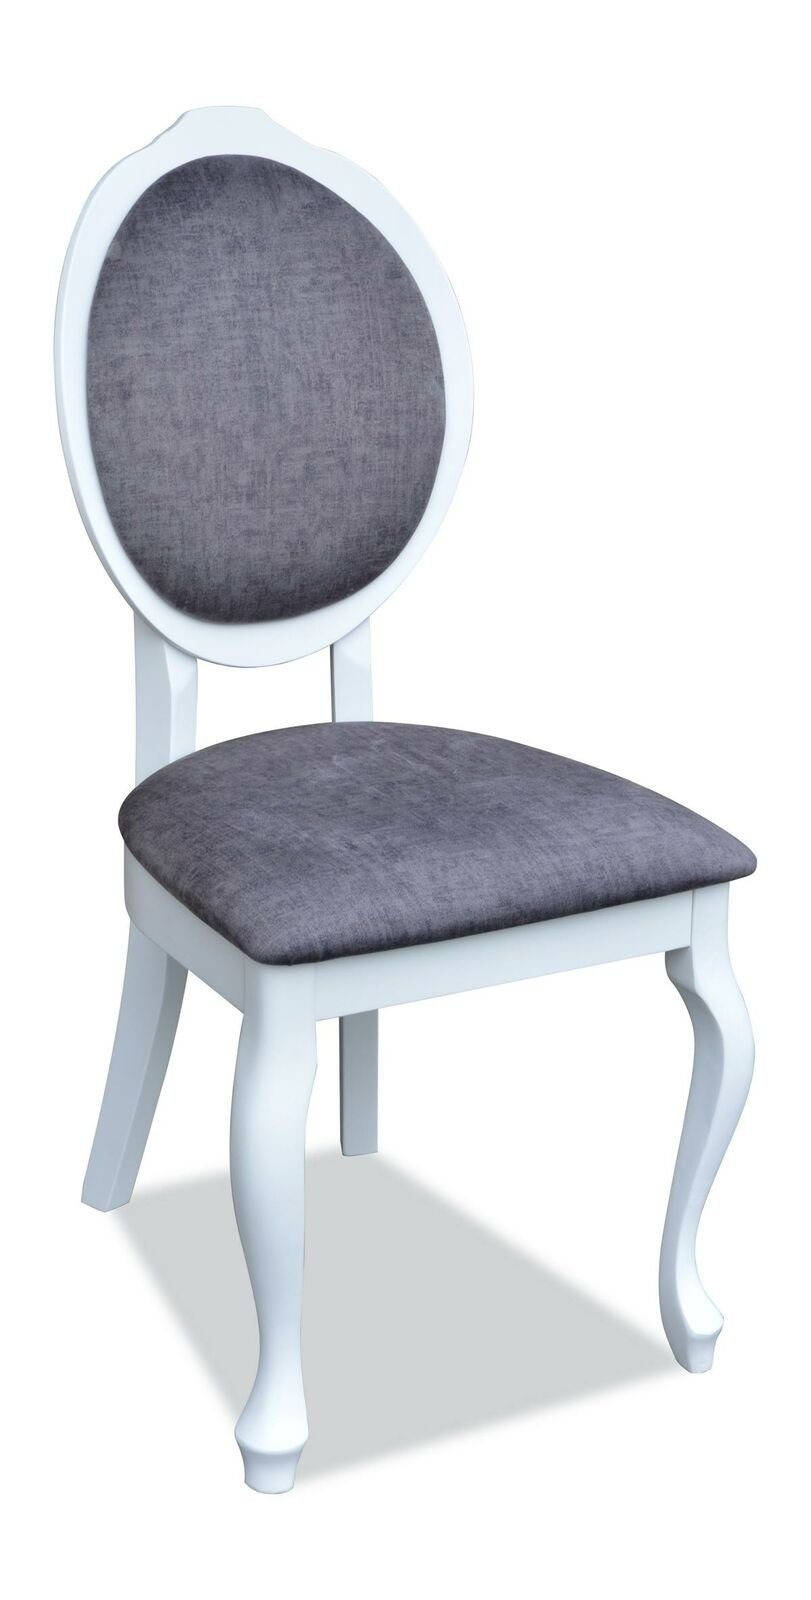 JVmoebel Stuhl, Stühle 4x Stuhl Holz Garnitur Set Neu Polster Esszimmer Lehn Echtes Stühle Sitz